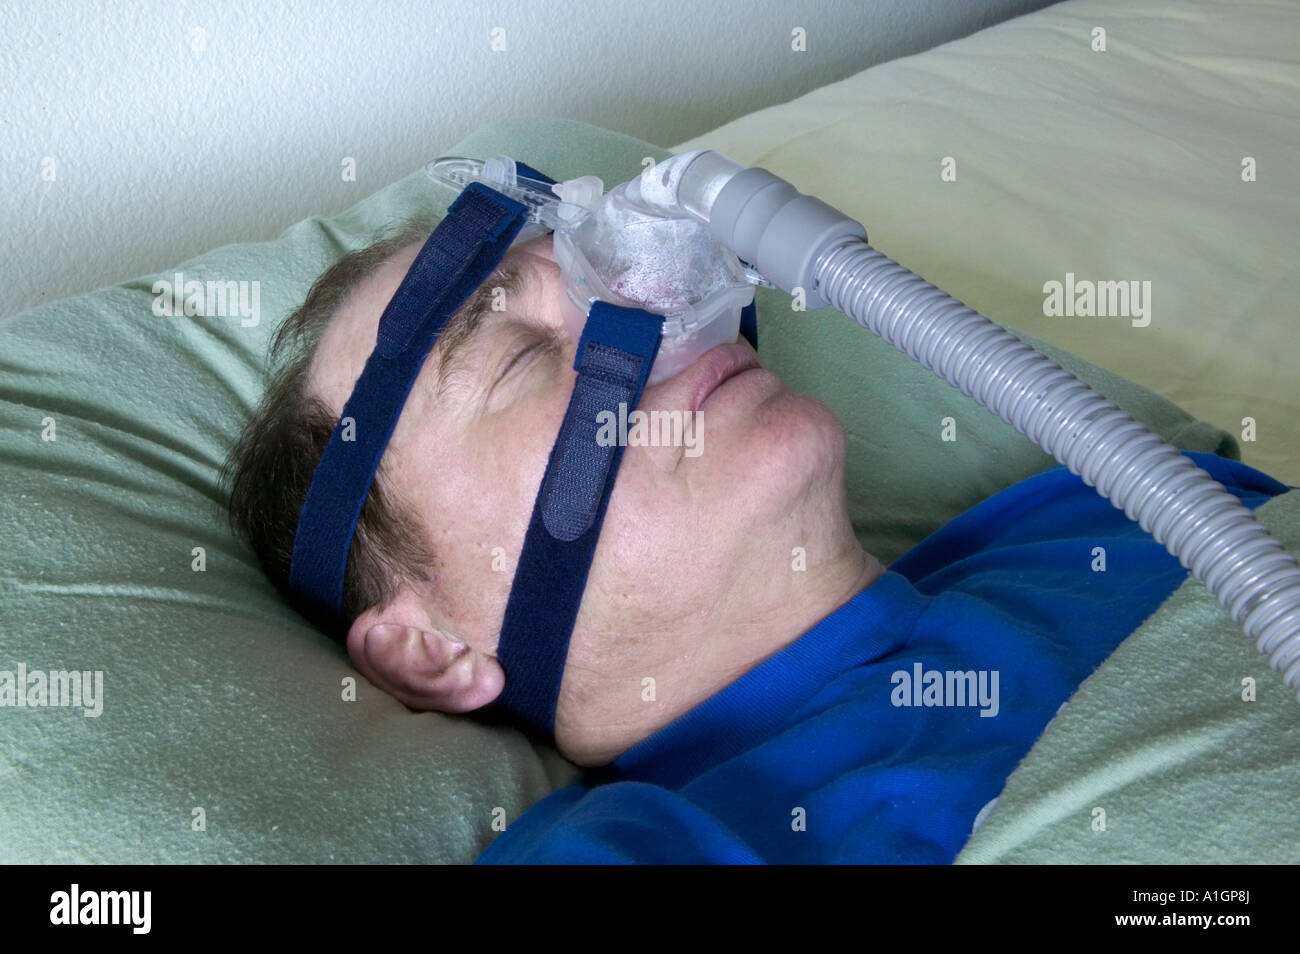 Los altos hombres durmiendo con dispositivo de respiración asistida, Nevada Foto de stock